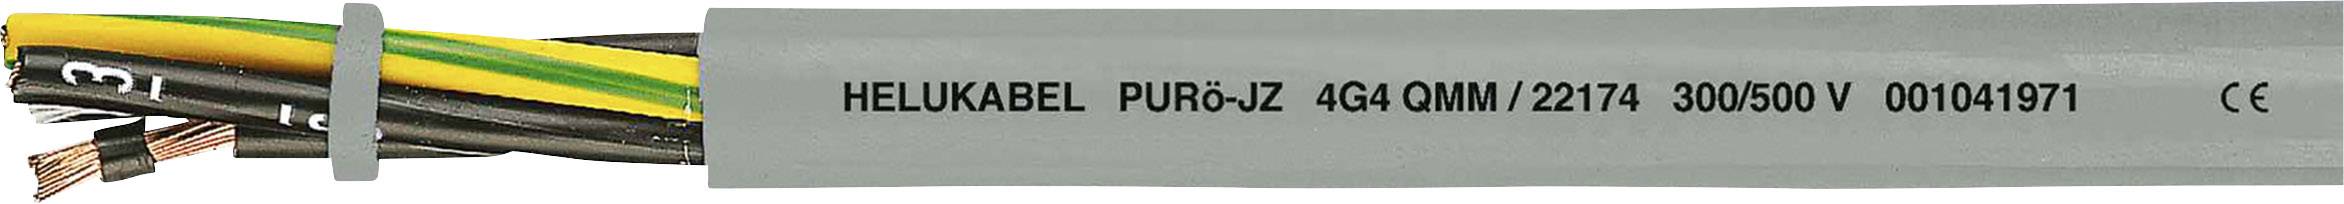 HELUKABEL PURö-JZ Steuerleitung 4 G 0.75 mm² Grau 22118 100 m